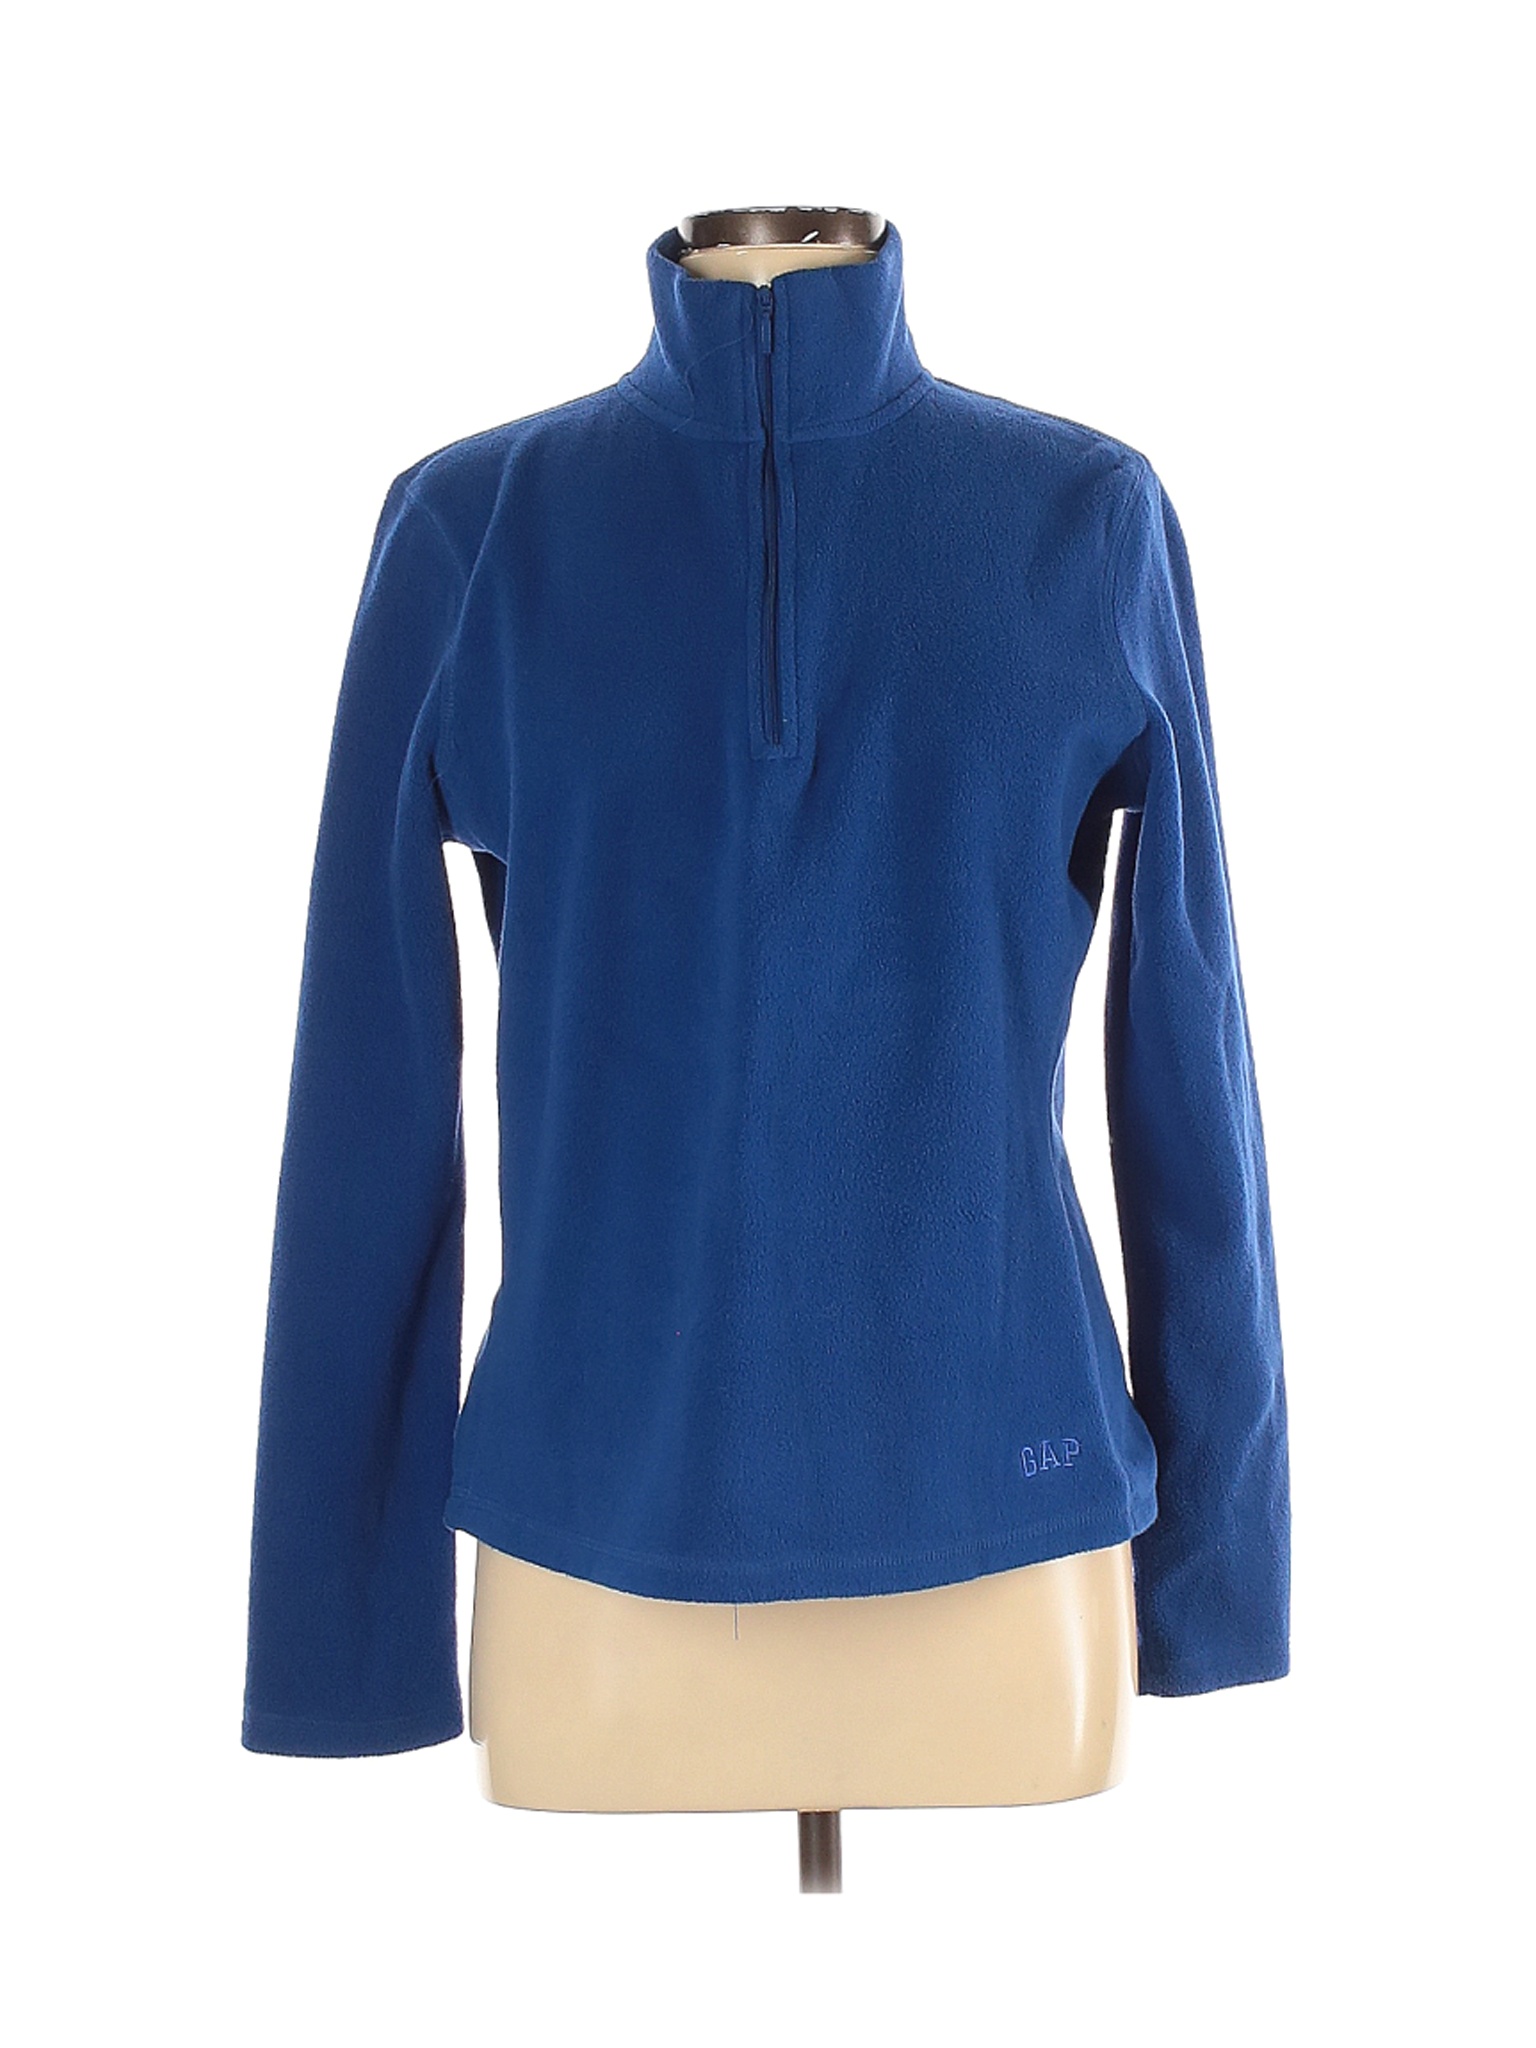 Gap Outlet Women Blue Fleece M | eBay